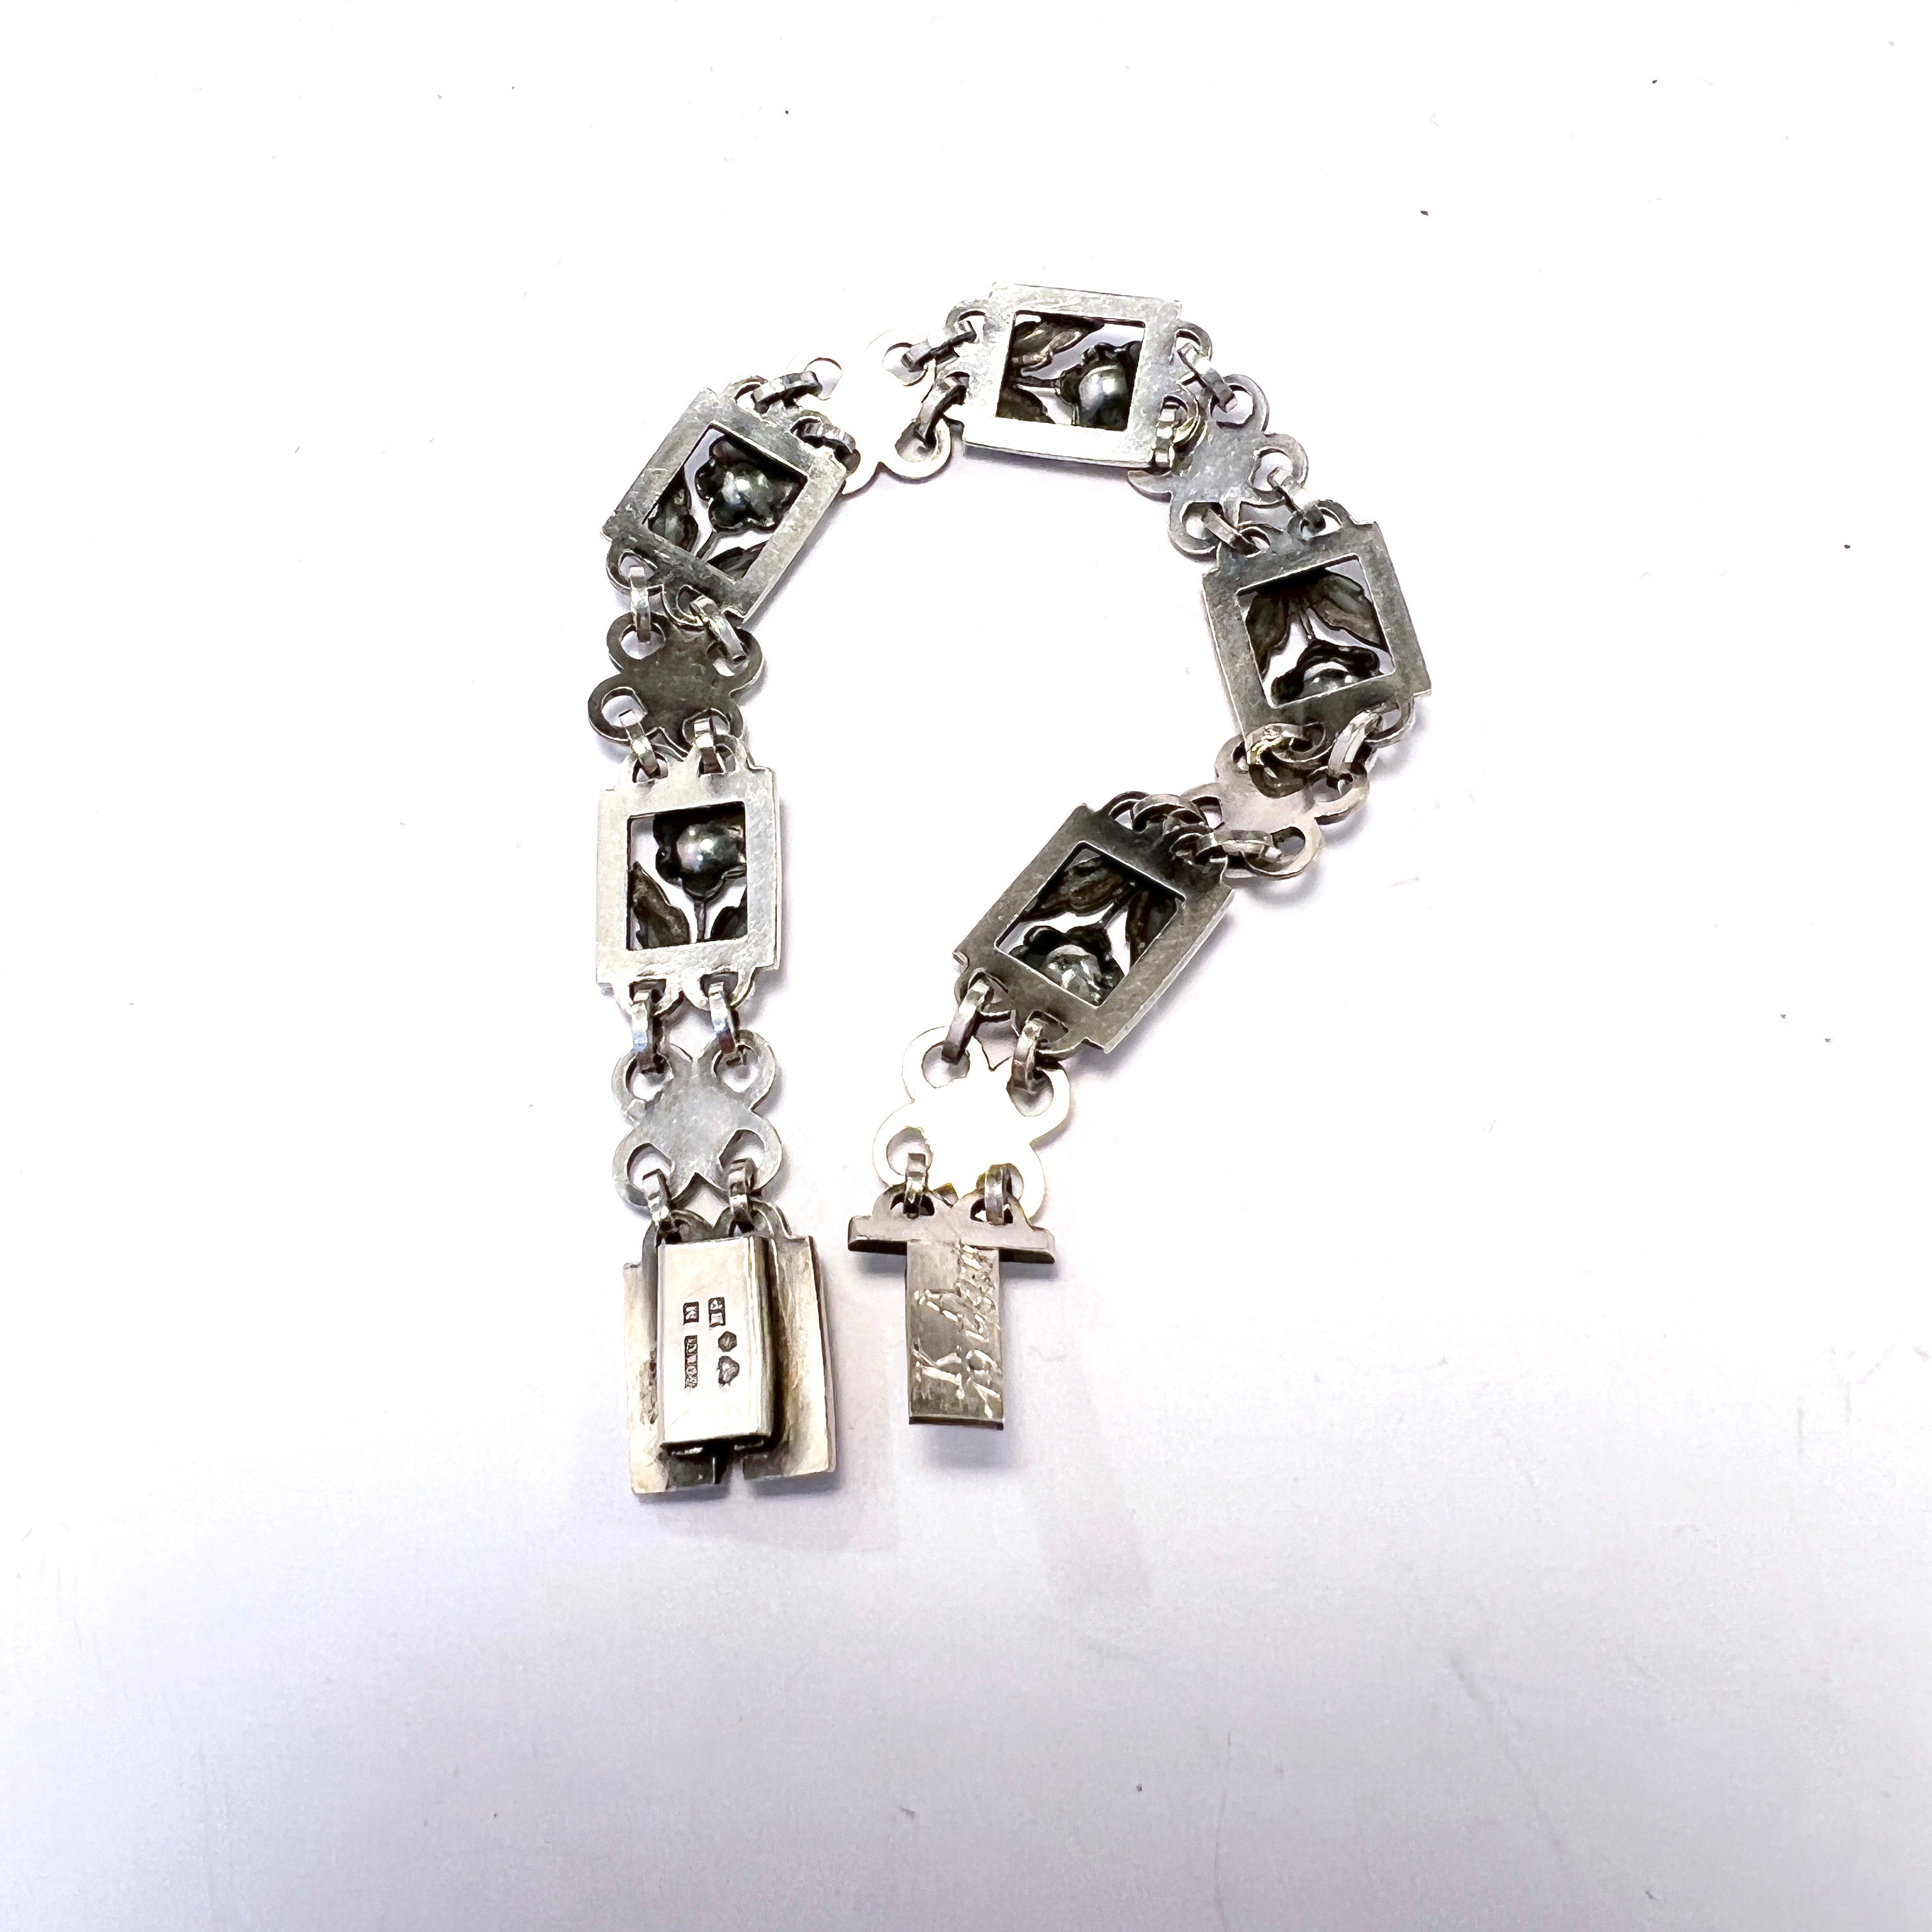 G Dahlgren, Sweden 1959. Vintage Sterling Silver Flower Bracelet.